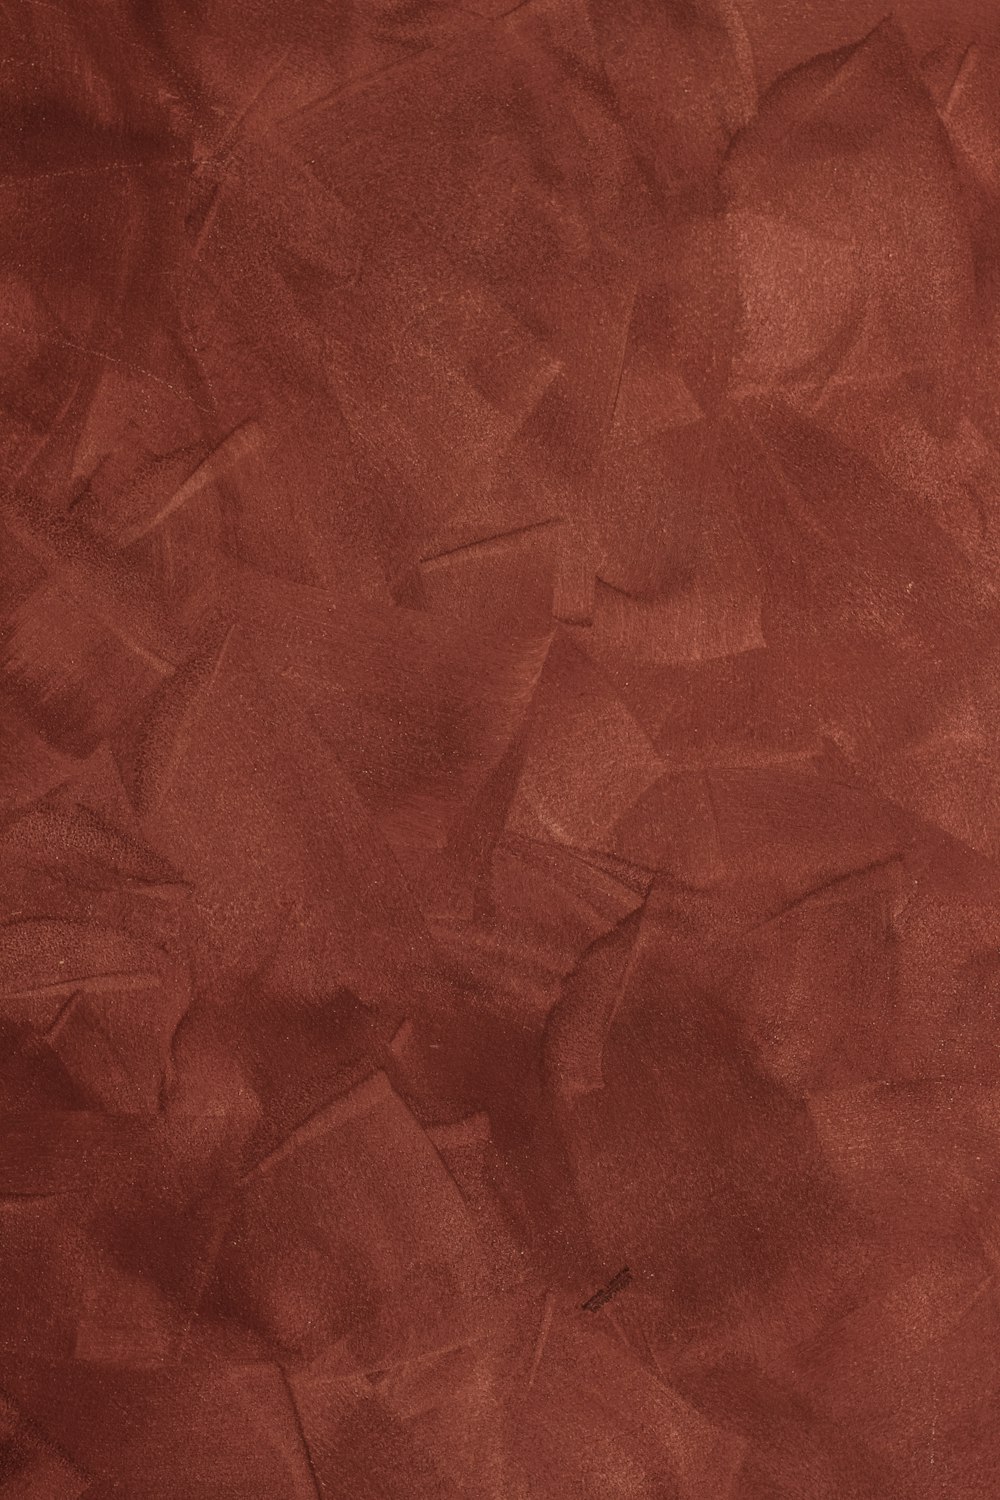 ざらざらした紙の質感の赤い背景